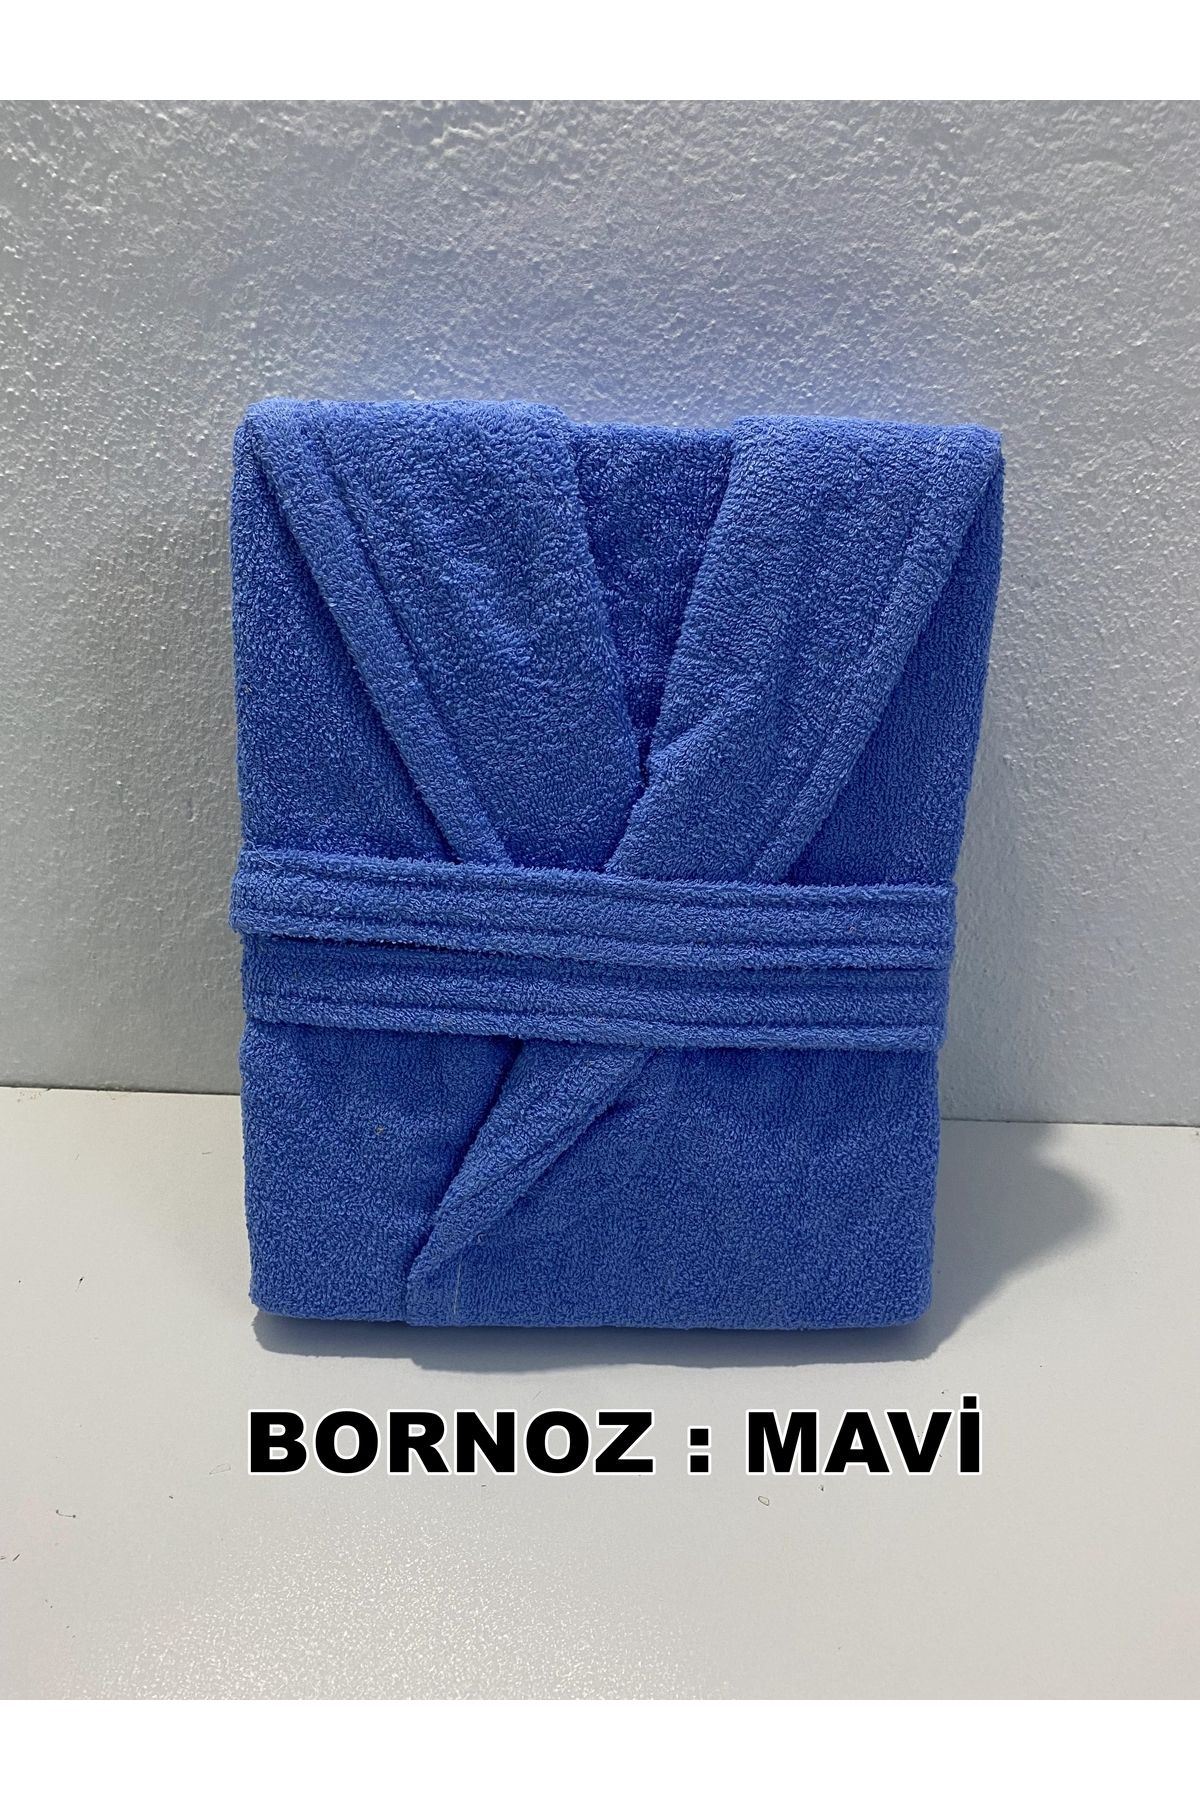 molisahome Bornoz Düz Bornoz Şal Yaka Bornoz Kadın & Erkek Bornoz M,L,XL,2XL Bornoz Sabahlık Yetişkin Bornoz